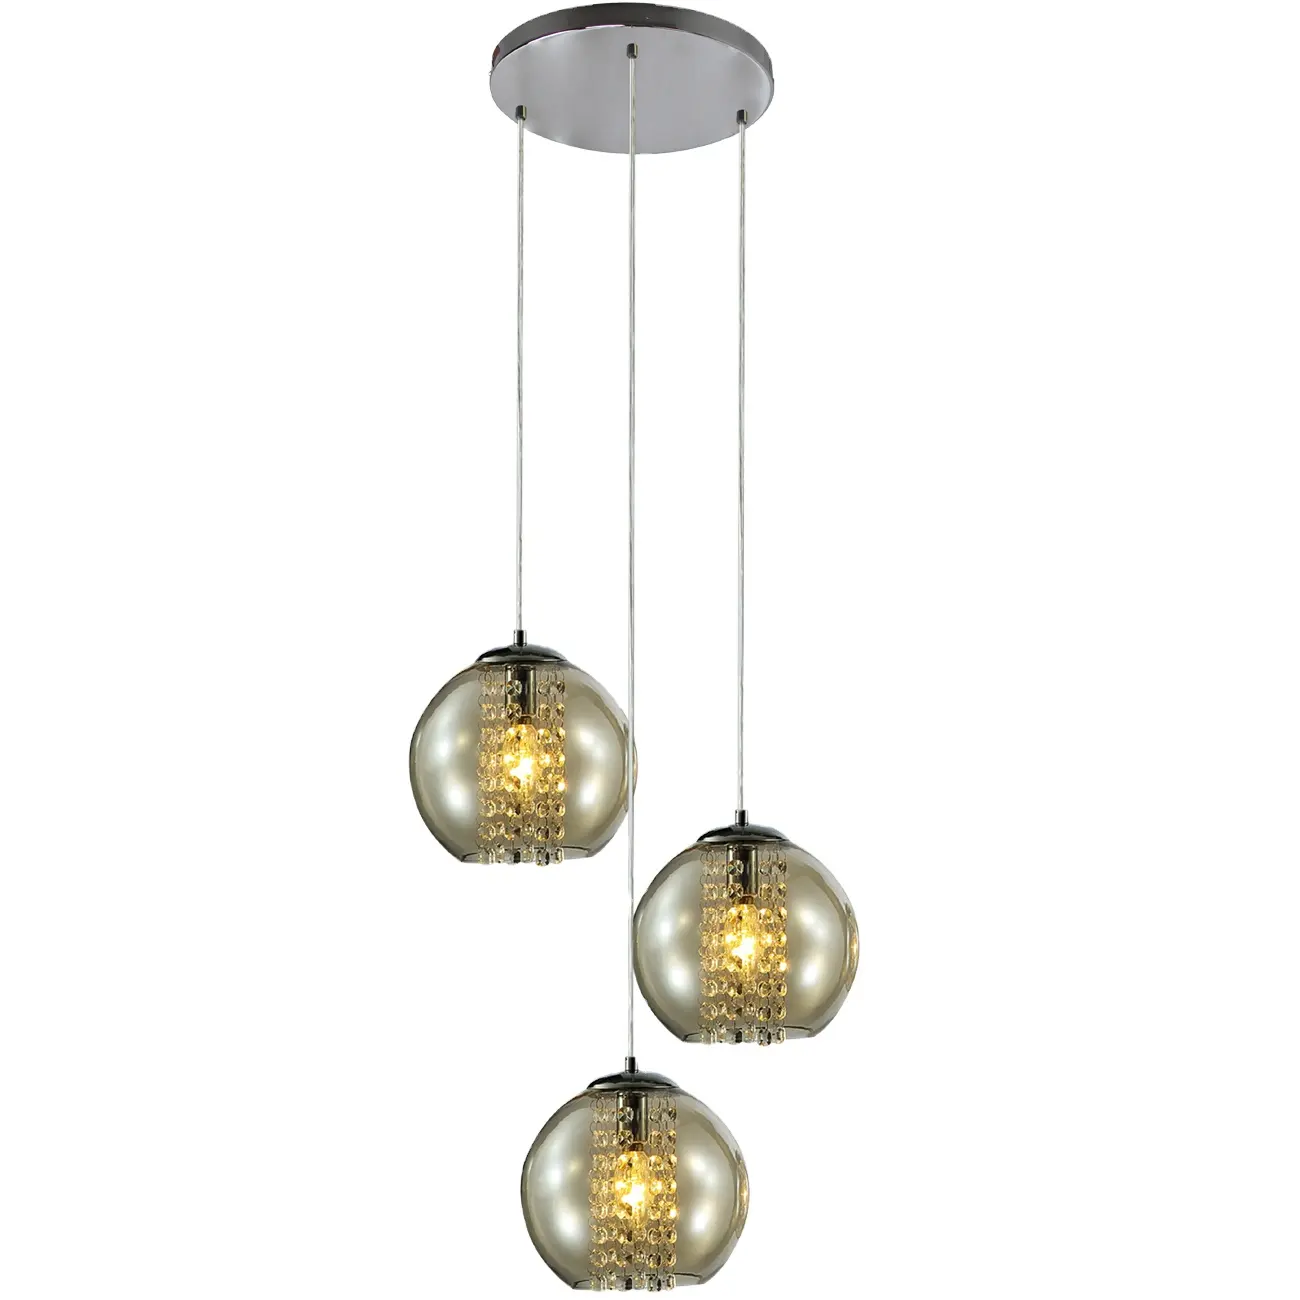 Iron chrome smoke glass pendant lamp light crystal chandelier light lamp fit E14 LED bulb for home hotel restaurant